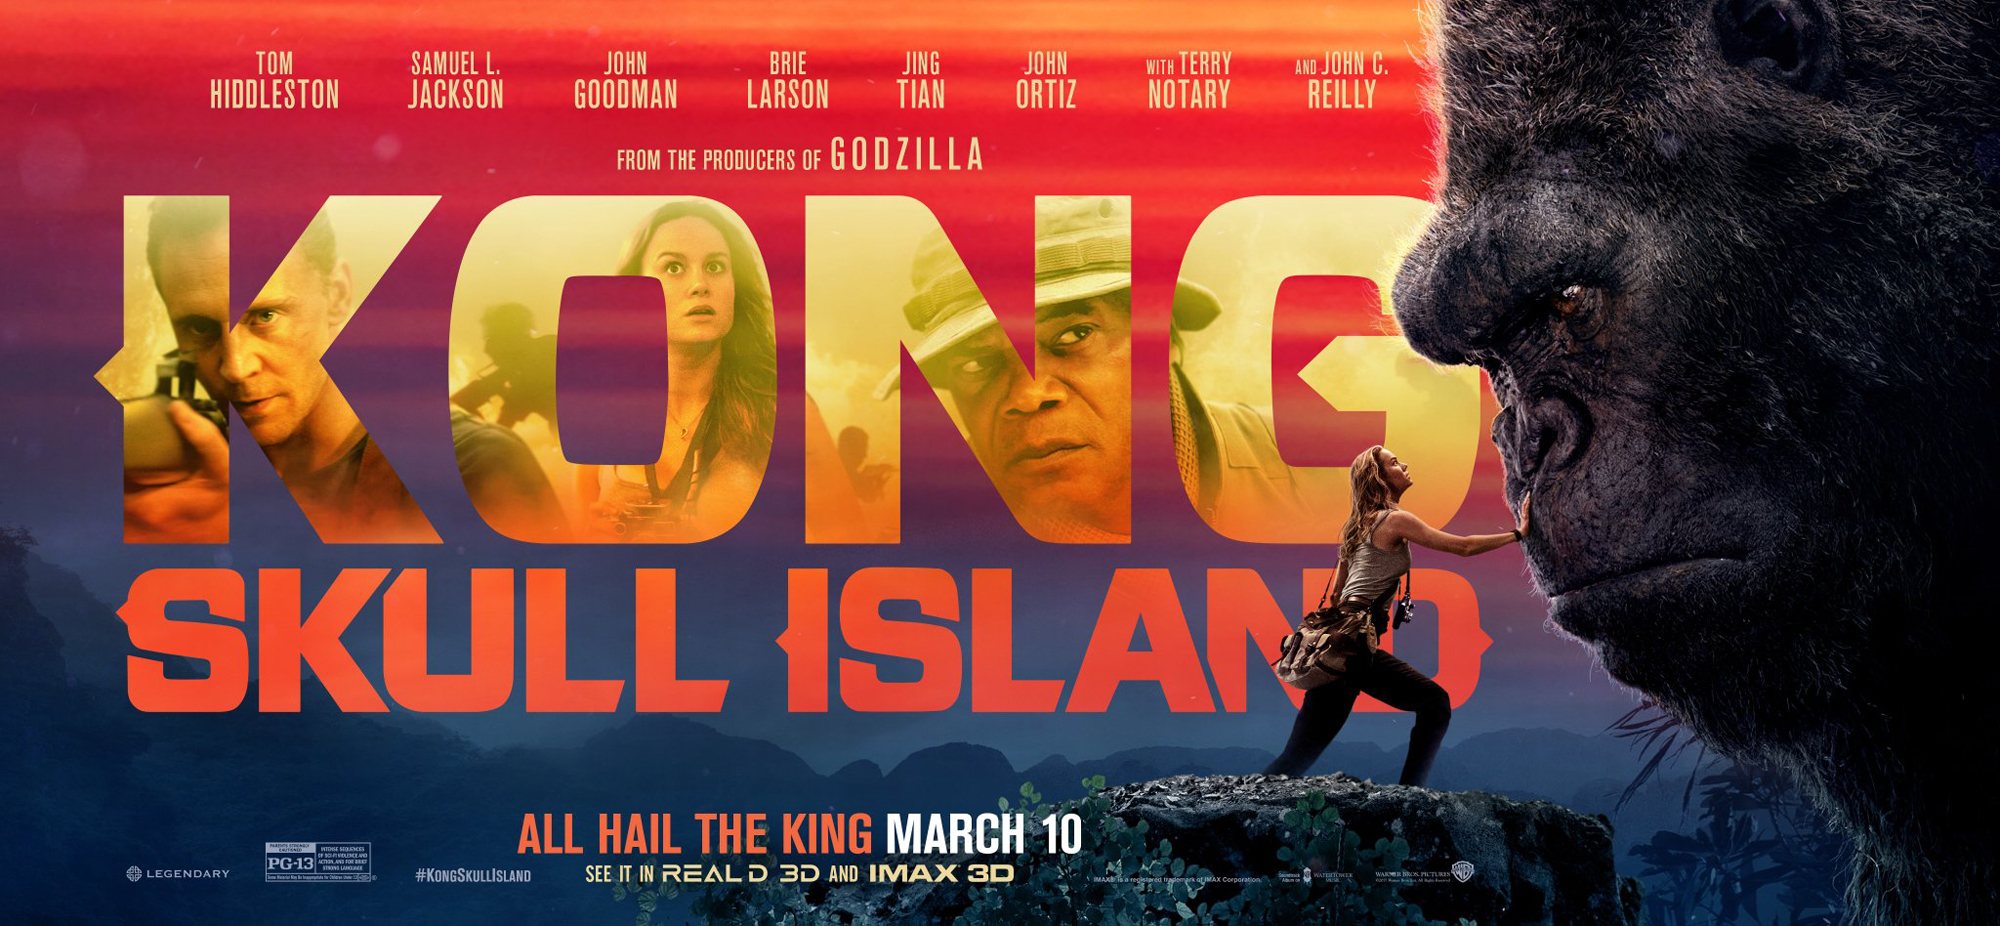 Sinopsis de Kong: Skull Island y cuiriosidades del casting